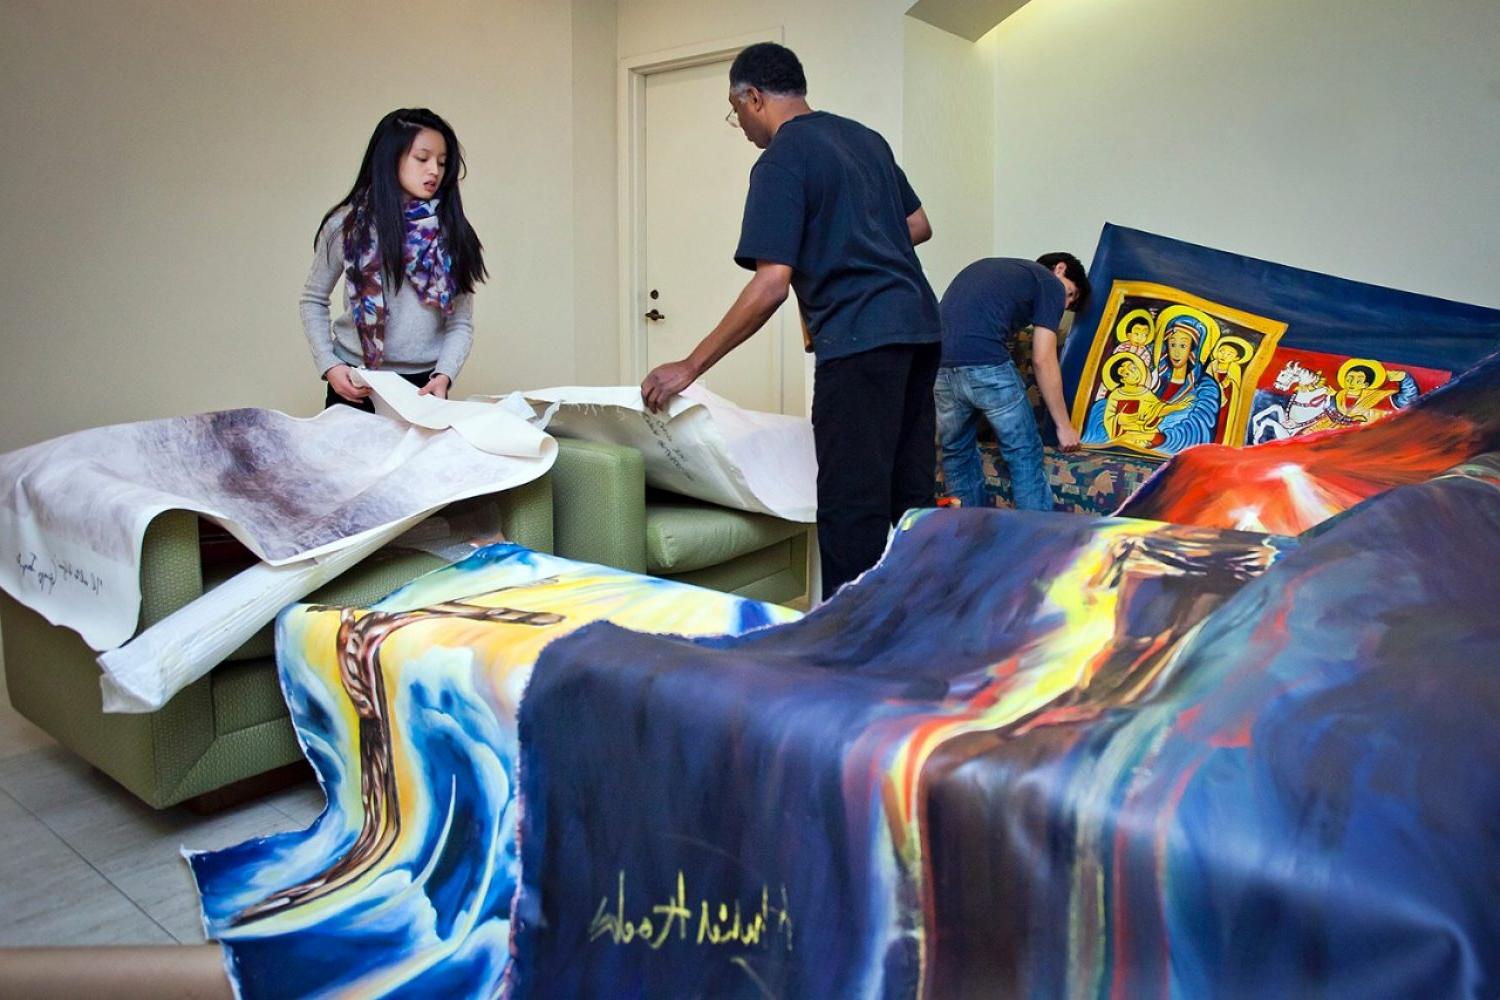 美术兼职教授Khalid Kodi与艺术俱乐部的学生, 在巴普斯特图书馆的画廊空间里安装艺术品. 该作品与一个项目有关，该项目涉及和平共处和社会正义的原则和承诺. 